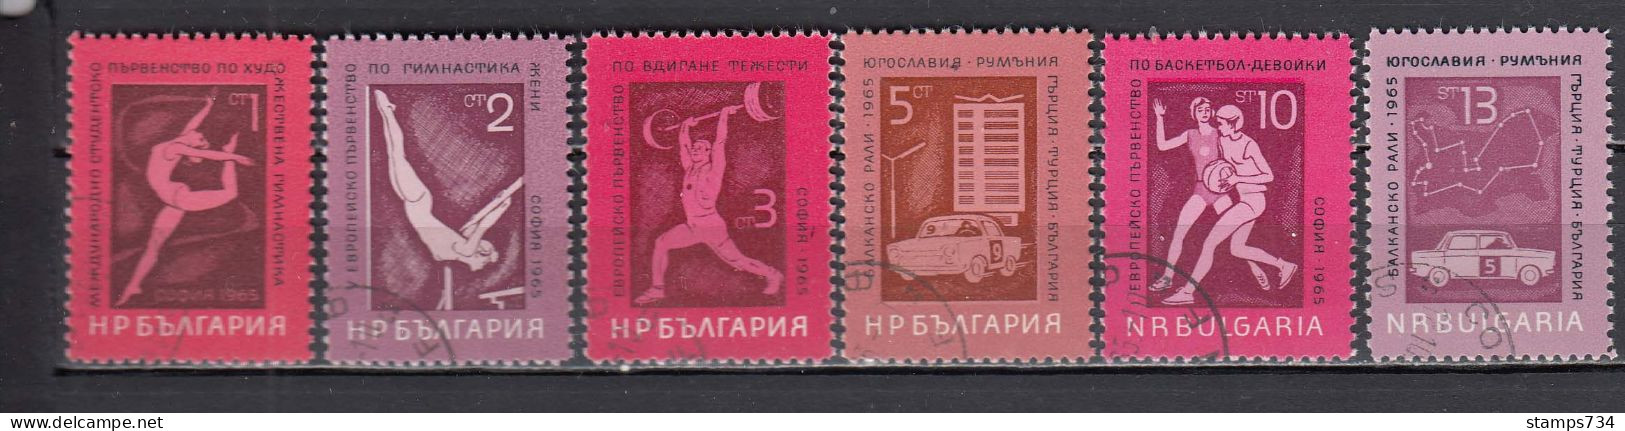 Bulgaria 1965 - Sport, Mi-Nr. 1558/63, Used - Used Stamps